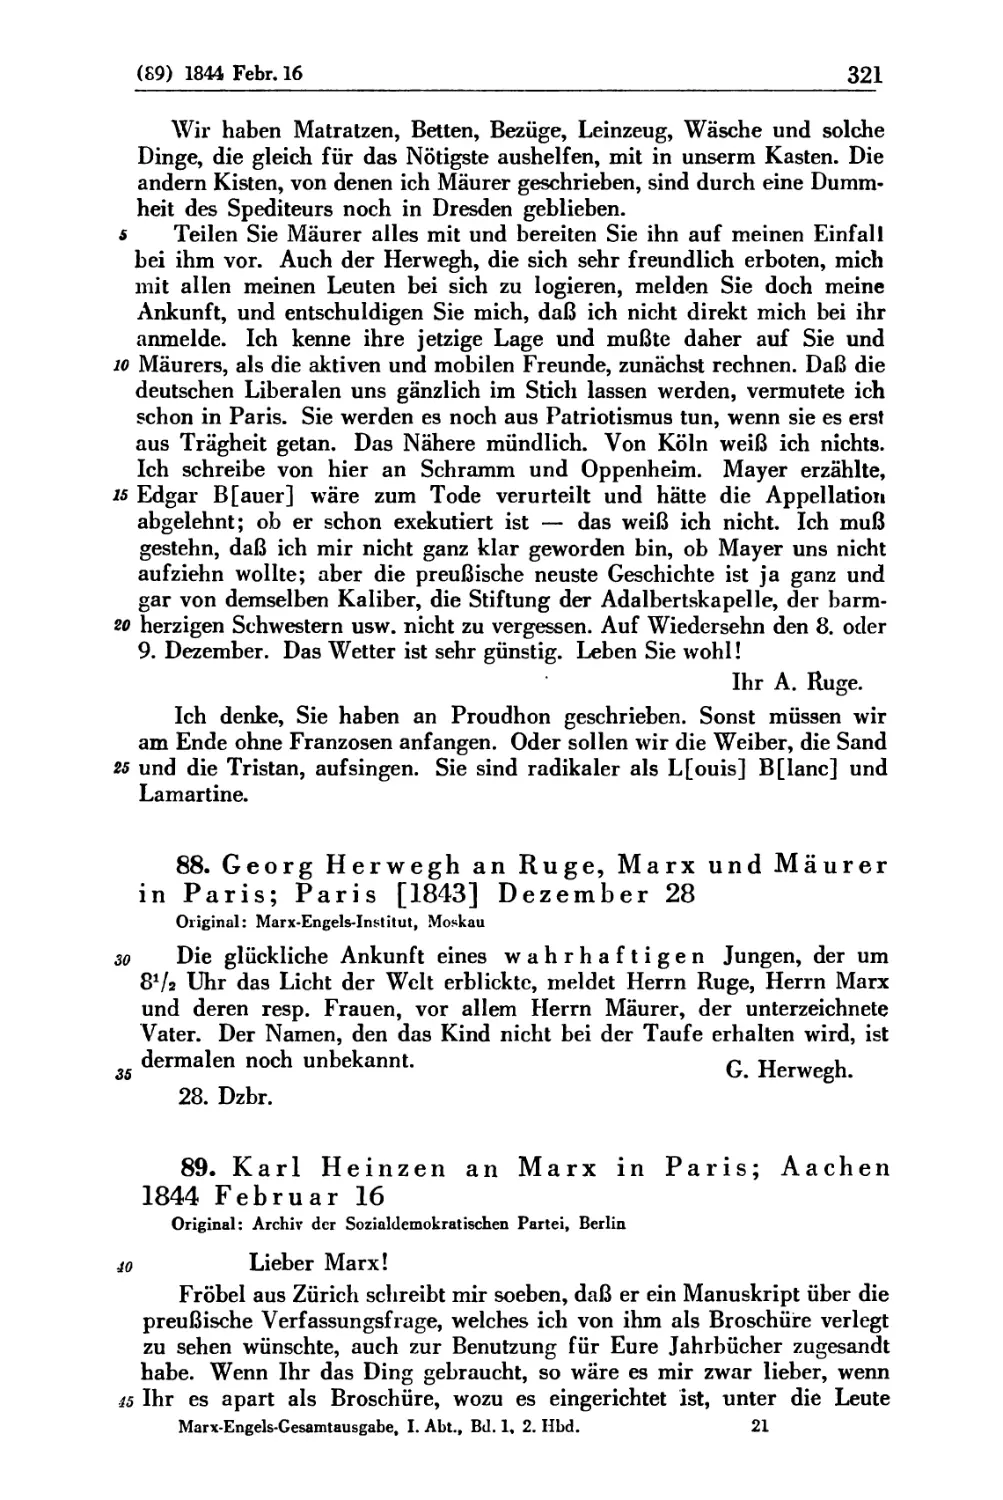 88. Georg Herwegh an Ruge, Marx und Mäurer in Paris; Paris [1843] Dezember 28
89. Karl Heinzen an Marx in Paris; Aachen 1844 Februar 16